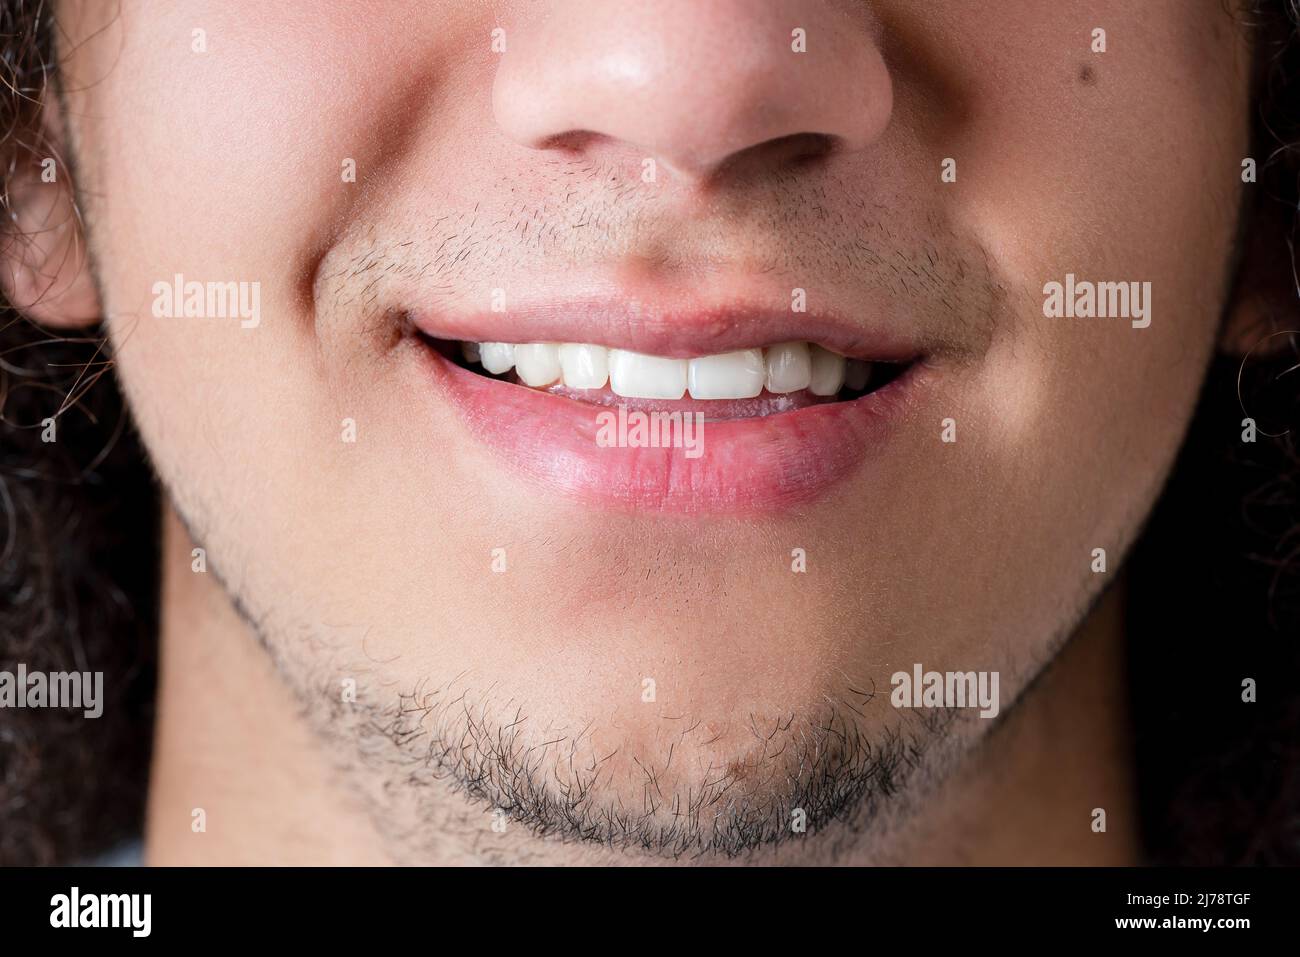 Foto de cerca de una cara sonriente y boca de un hombre joven, de buen aspecto y barbudo. Fotografías de alta calidad Foto de stock